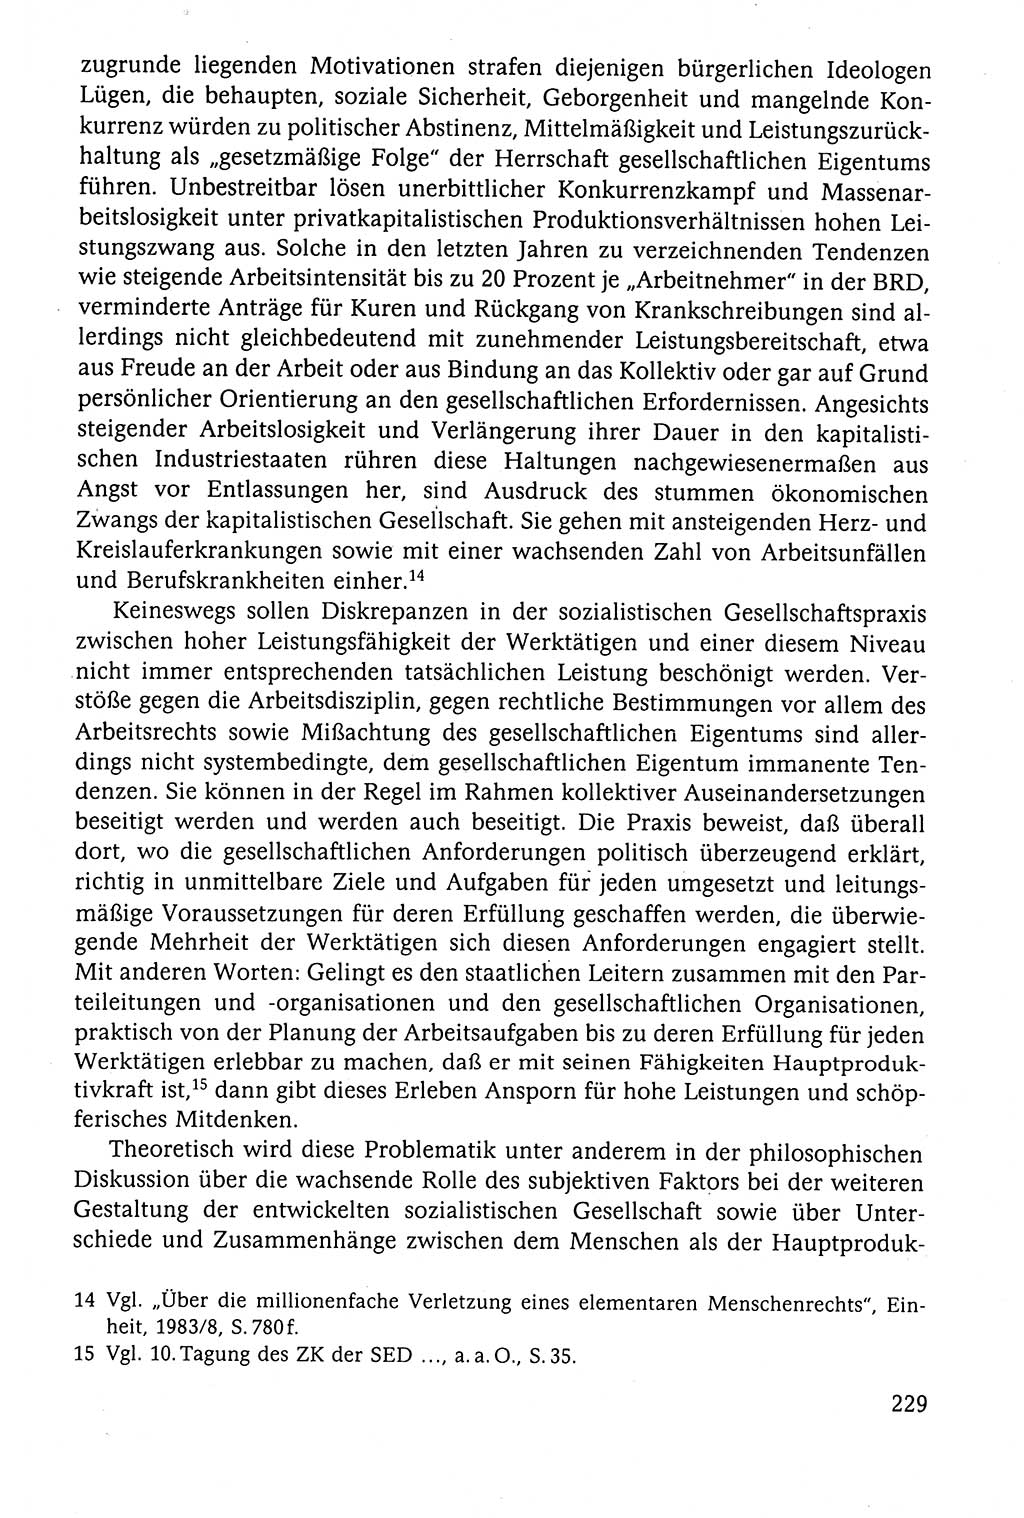 Der Staat im politischen System der DDR (Deutsche Demokratische Republik) 1986, Seite 229 (St. pol. Sys. DDR 1986, S. 229)